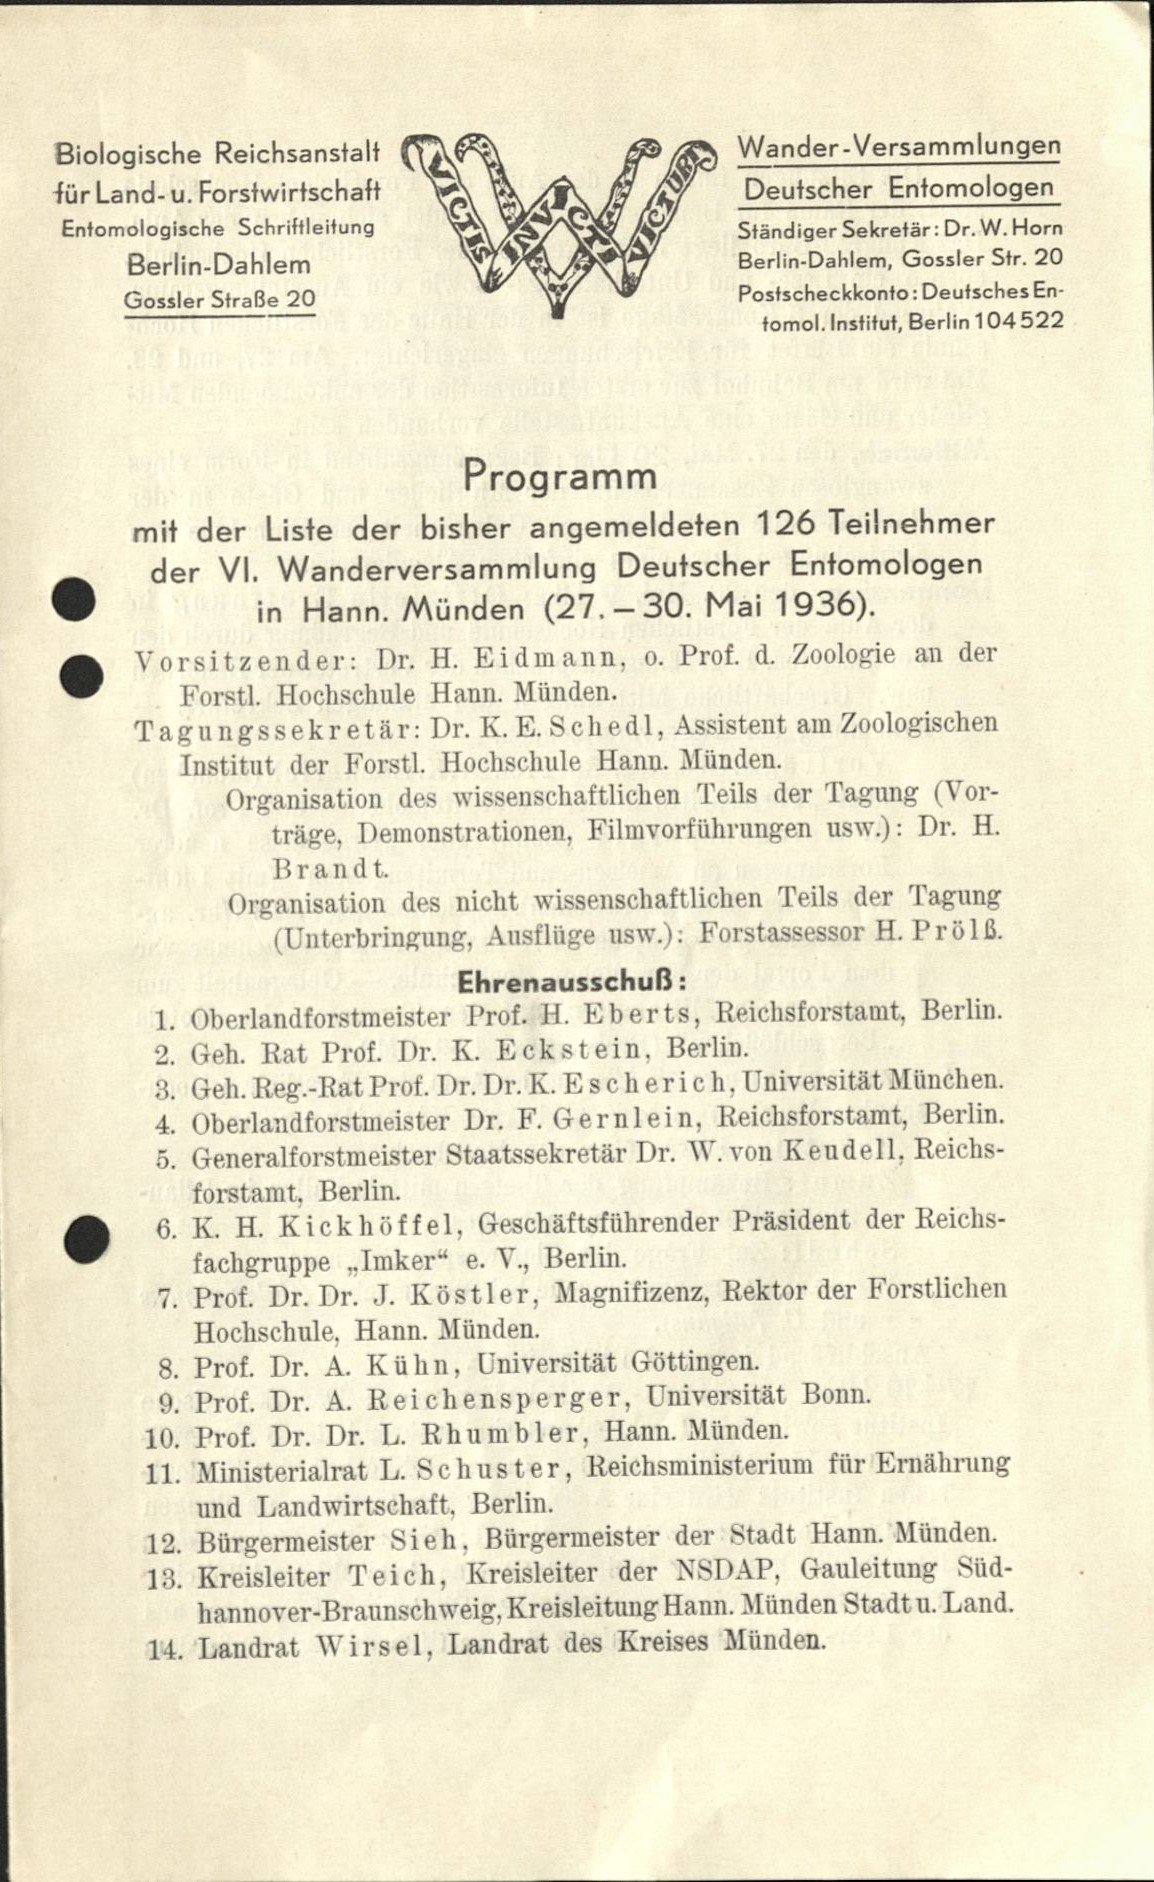 Programm und Teilnehmerliste der 6. Wanderversammlung Deutscher Entomologen (Senckenberg Deutsches Entomologisches Institut CC BY-NC-SA)